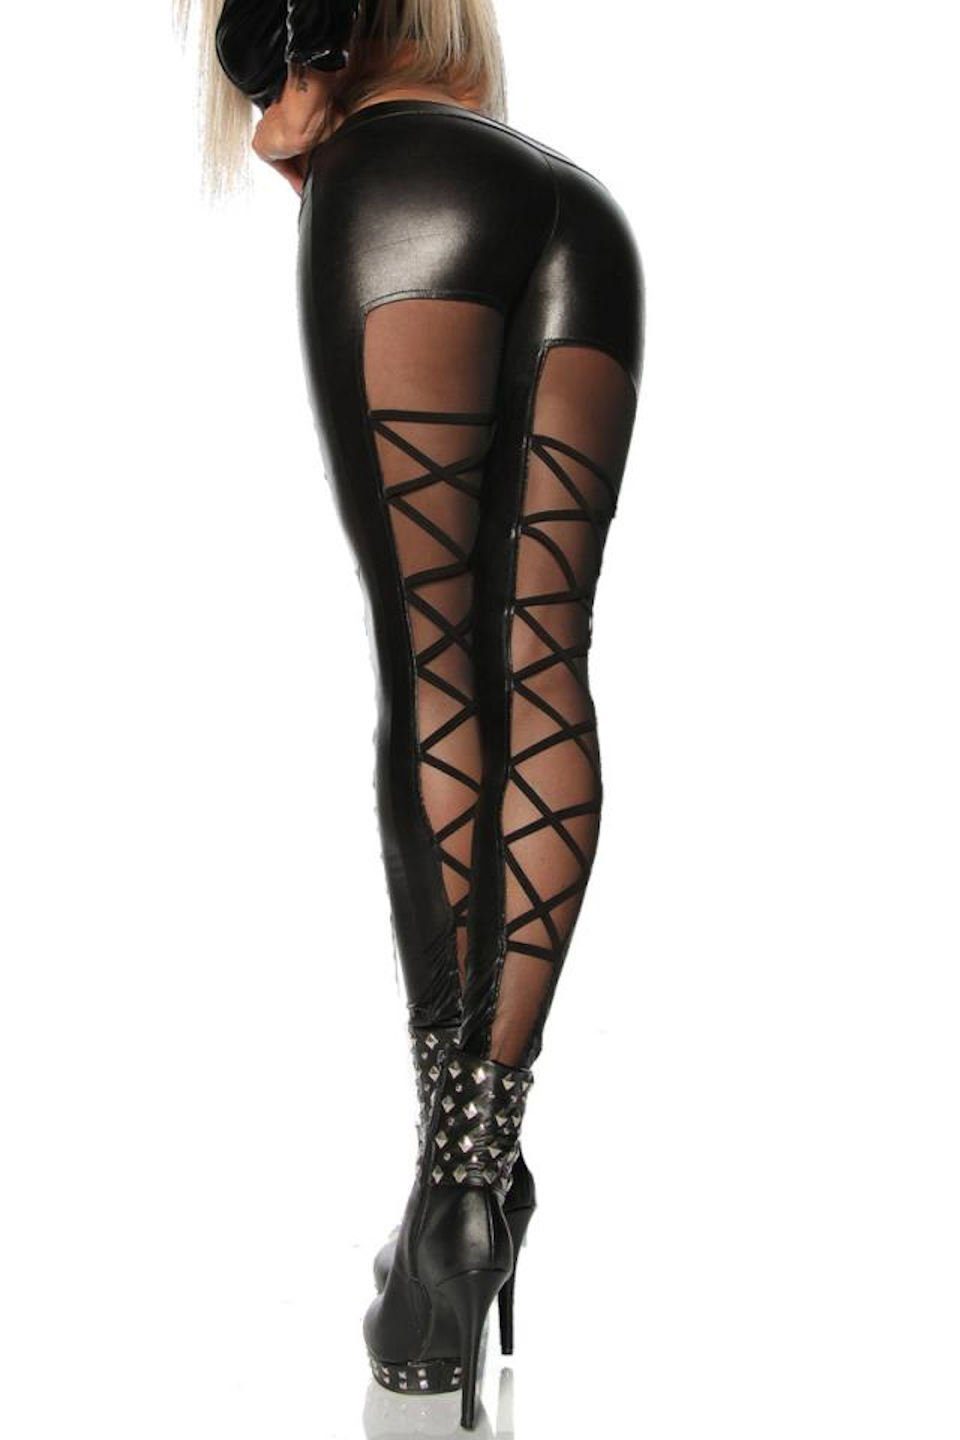 Damen Hosen Saresia Leggings Wetlook-Leggings Gogo Hose mit Tüll und Zierbänder in schwarz, Made in EU